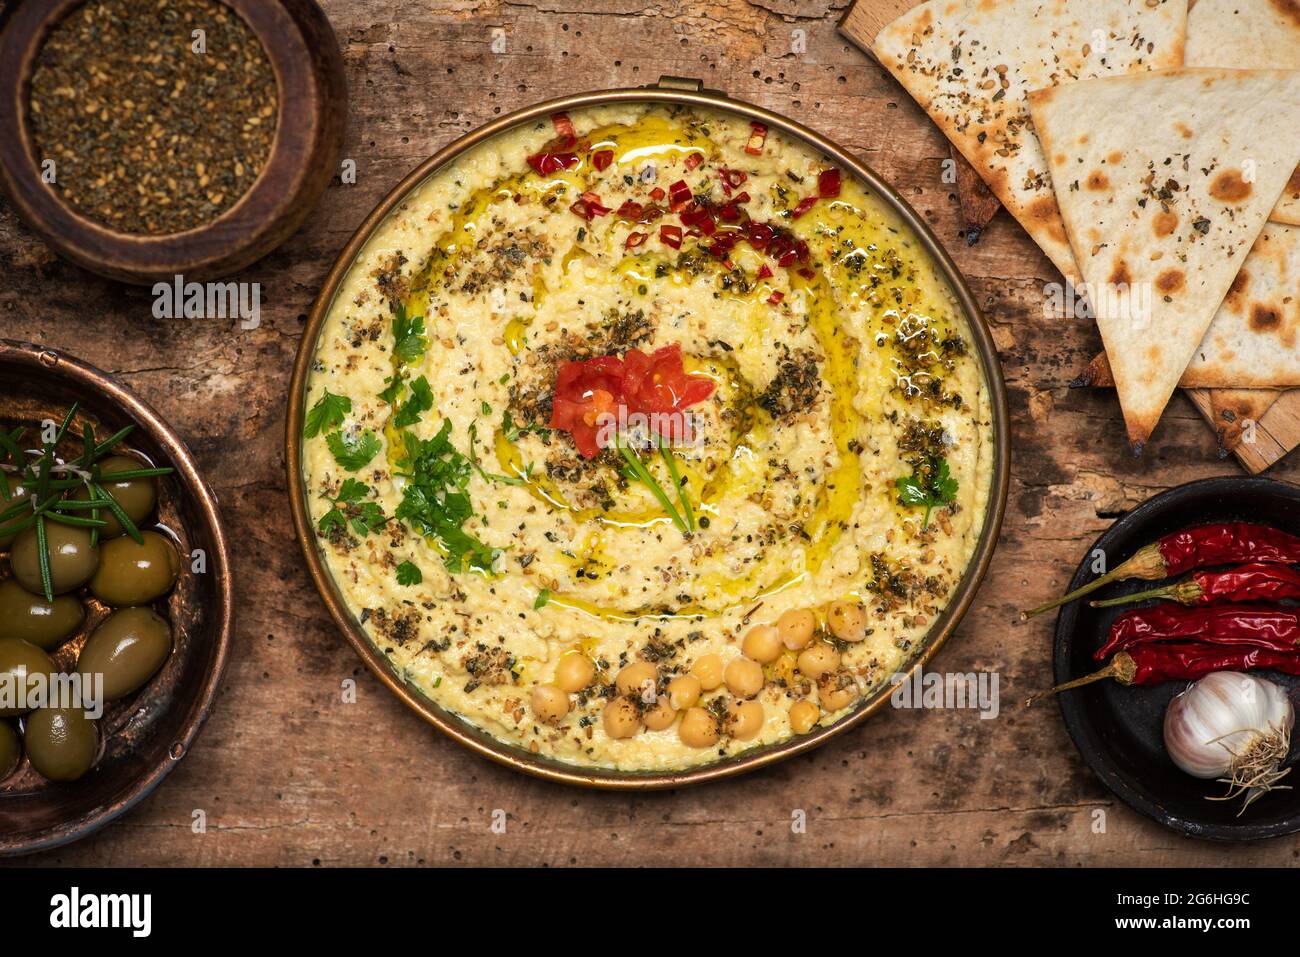 Salsa hummus sumergiera hecha de garbanzos, sésamo y otros ingredientes, utilizada tradicionalmente en la cocina mediterránea y de Pascua media, servida en un tazón Foto de stock